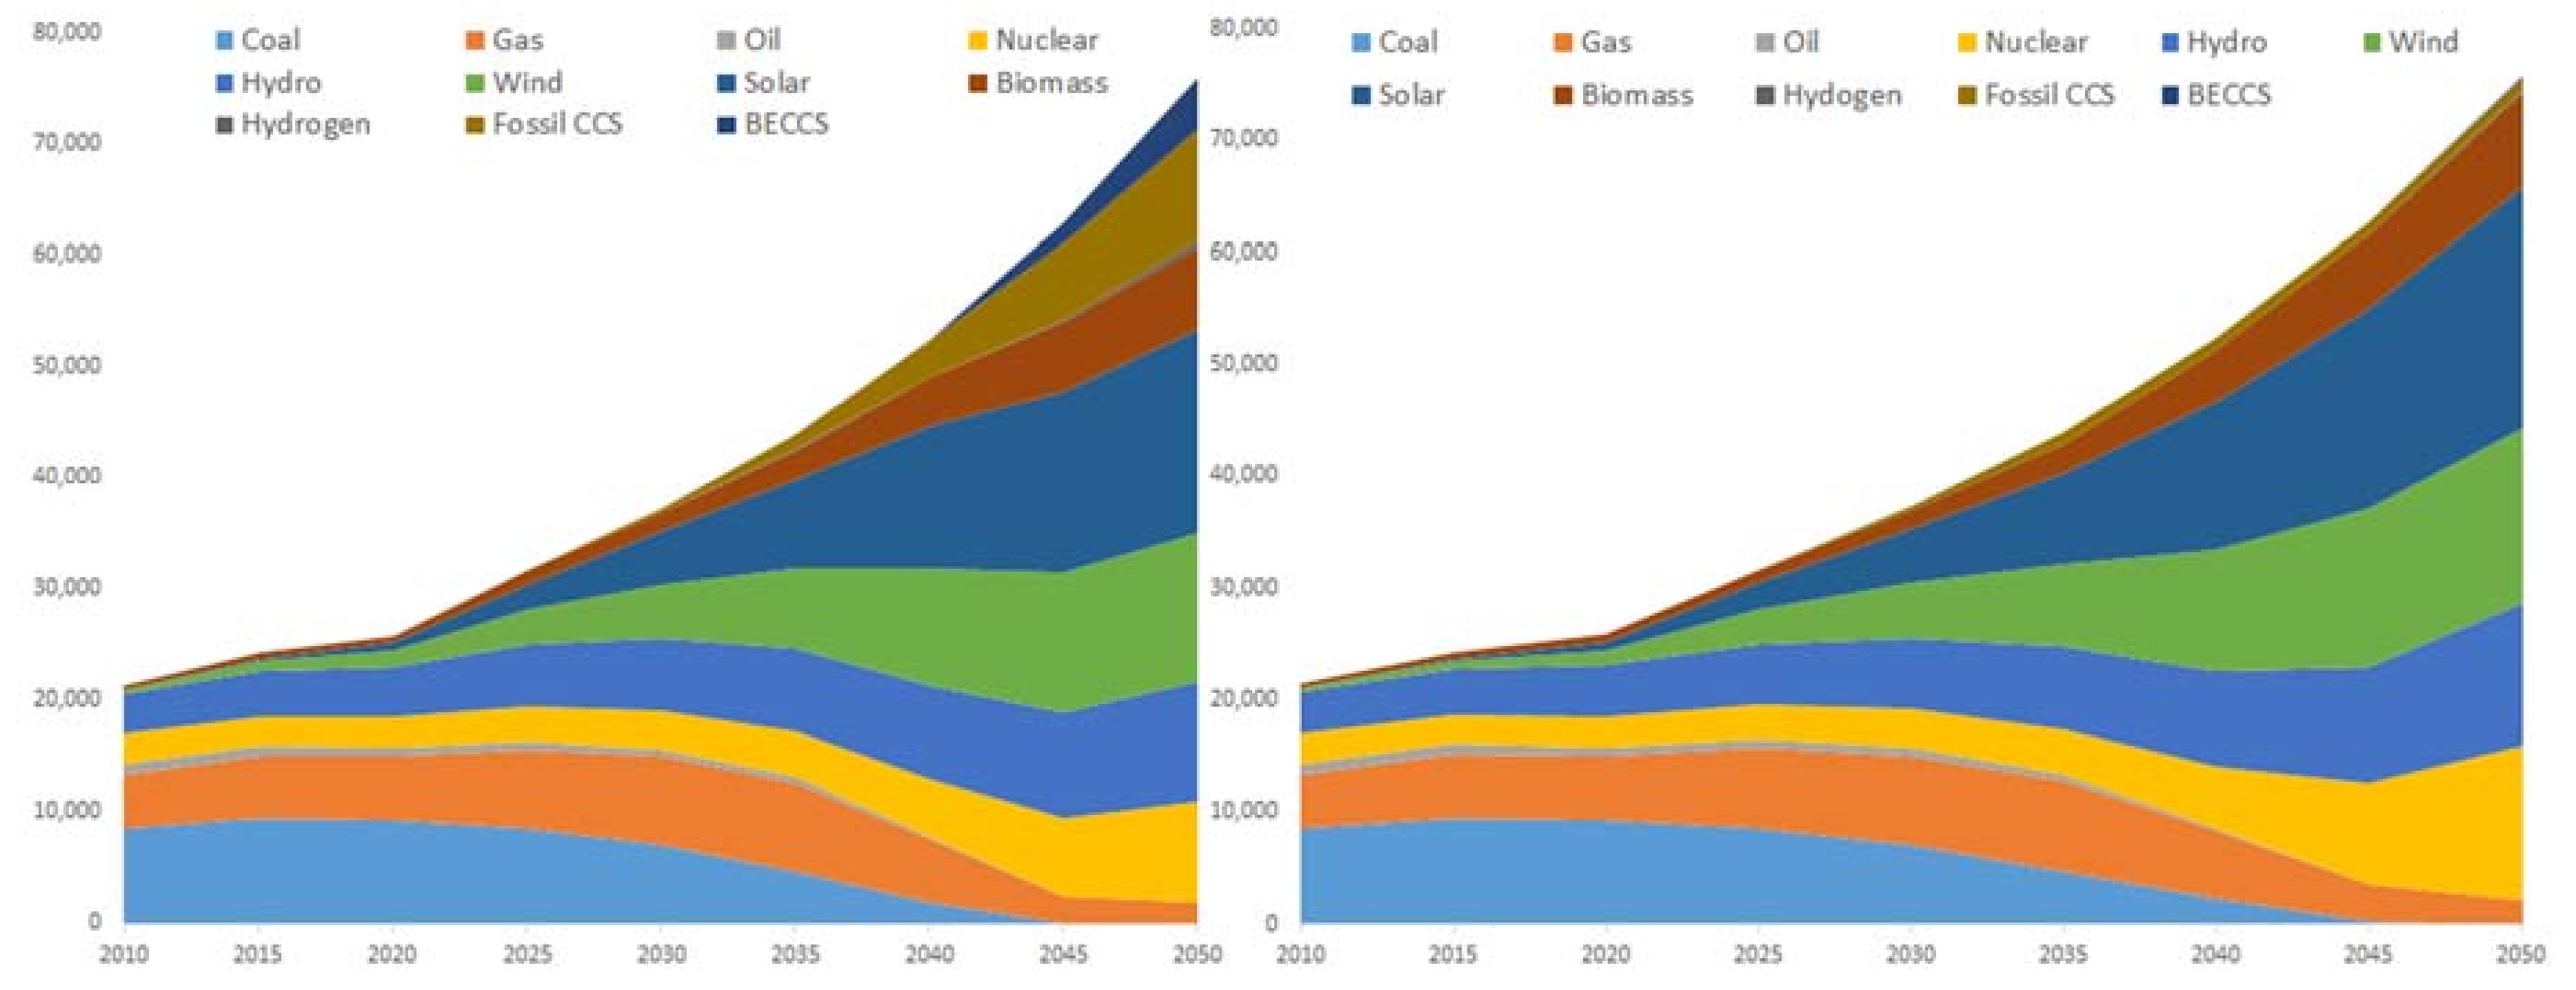 carbon capture and utilization